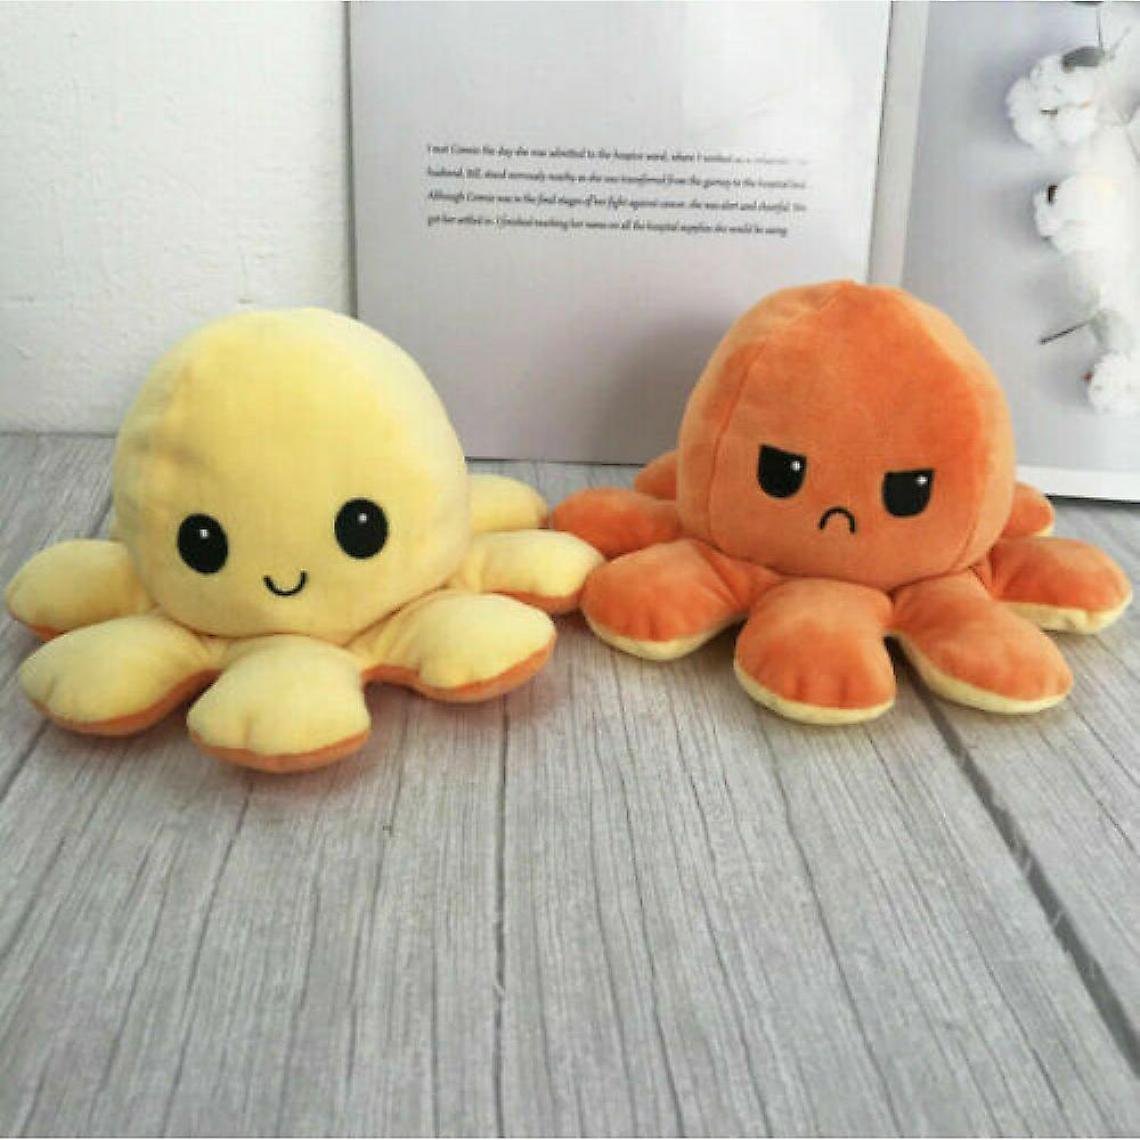 Universal - La pieuvre en peluche est réversible, mignonne et retournée, jouets doux, cadeaux, jouets heureux et tristes (jaune et orange). - Doudous